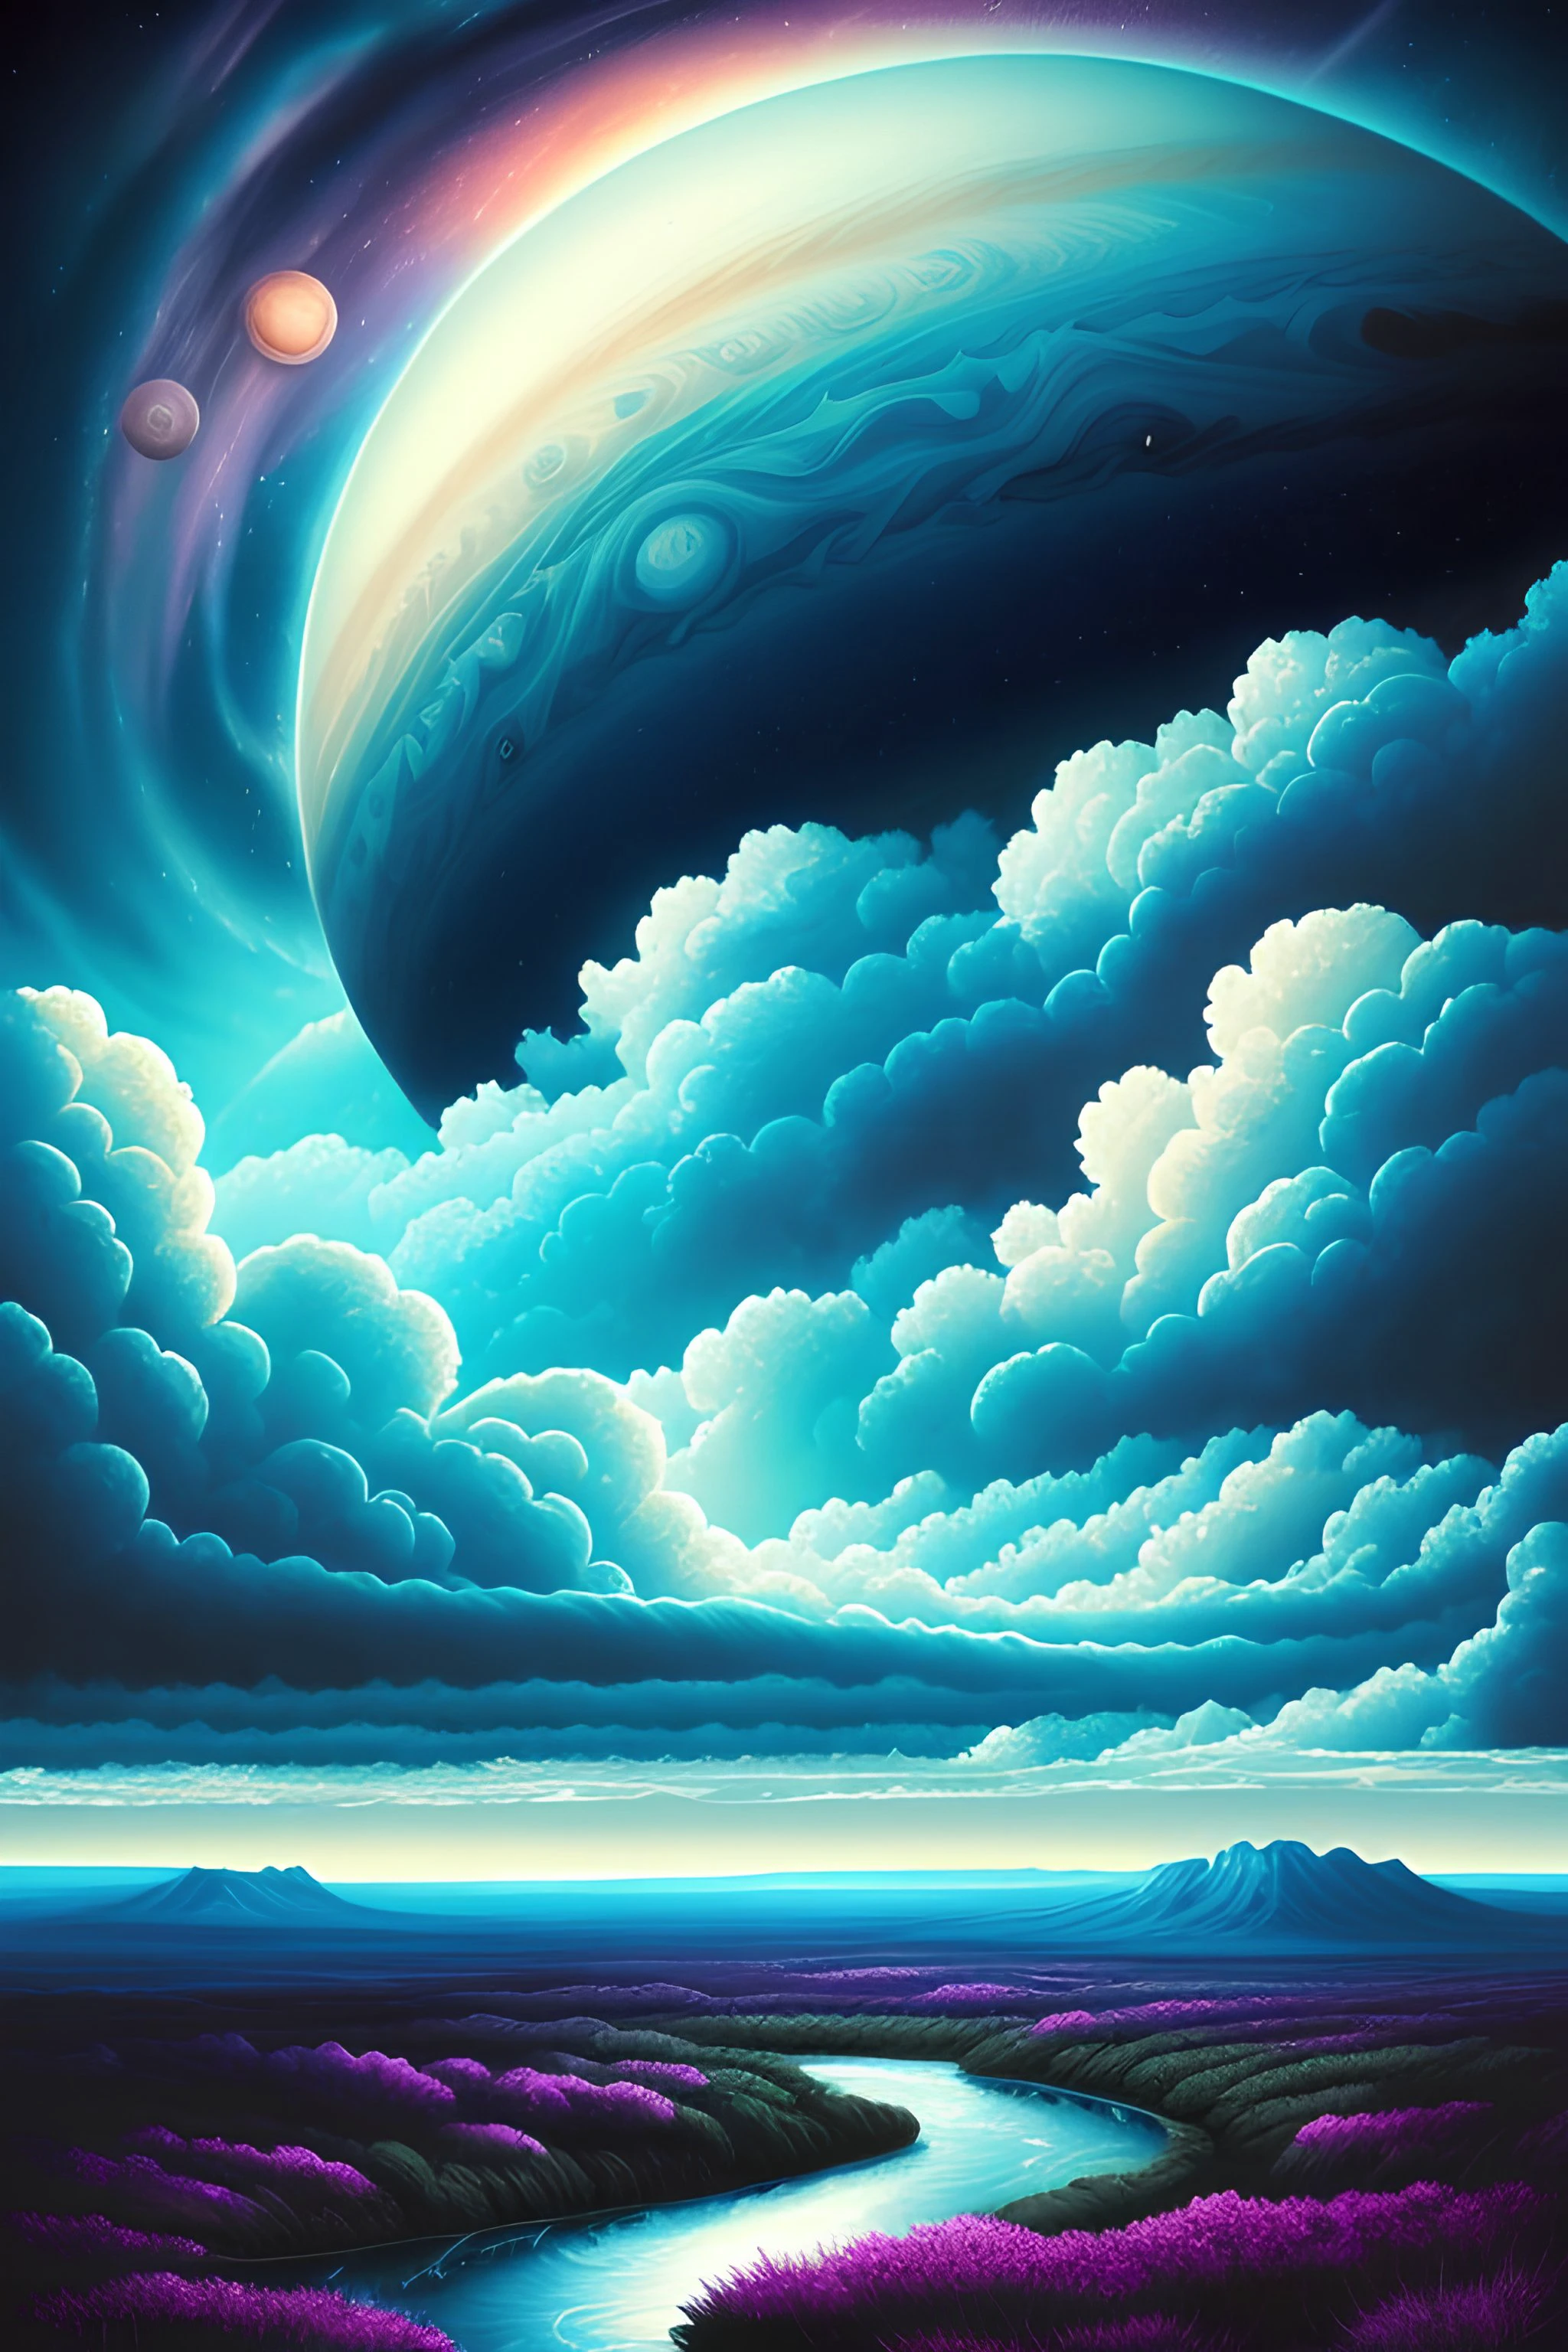 Illustration der Jupiterwolken von Dan Mumford, fremde Landschaft und Vegetation, epische Szene, viele wirbelnde Wolken, hohe Belichtung, sehr detailliert, Realistisch, lebendige blau getönte Farben, uhd